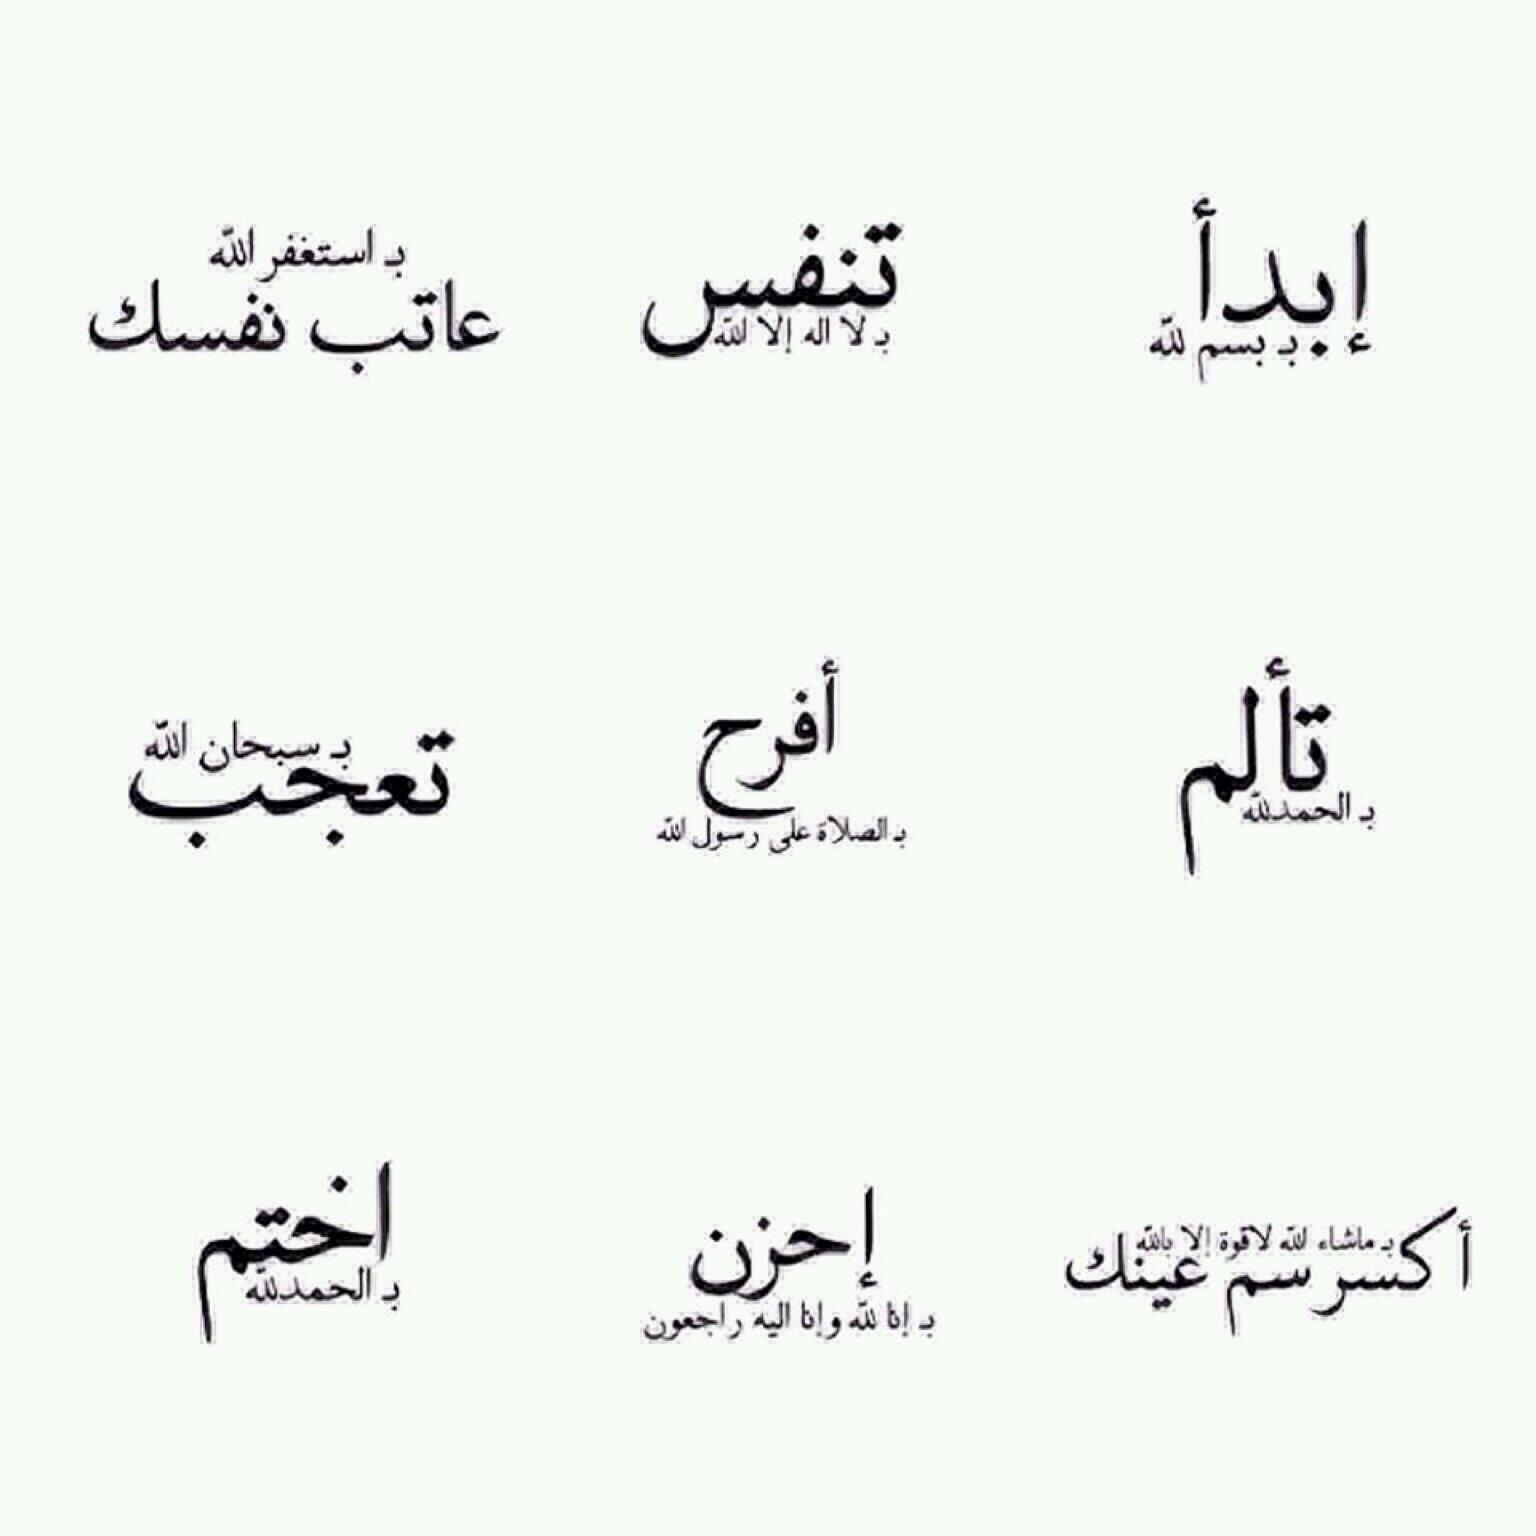 Полюби свою судьбу перевод на арабский. Арабские надписи. Арабские Татуировки. Тату арабские надписи. Красивые тату на арабском языке.